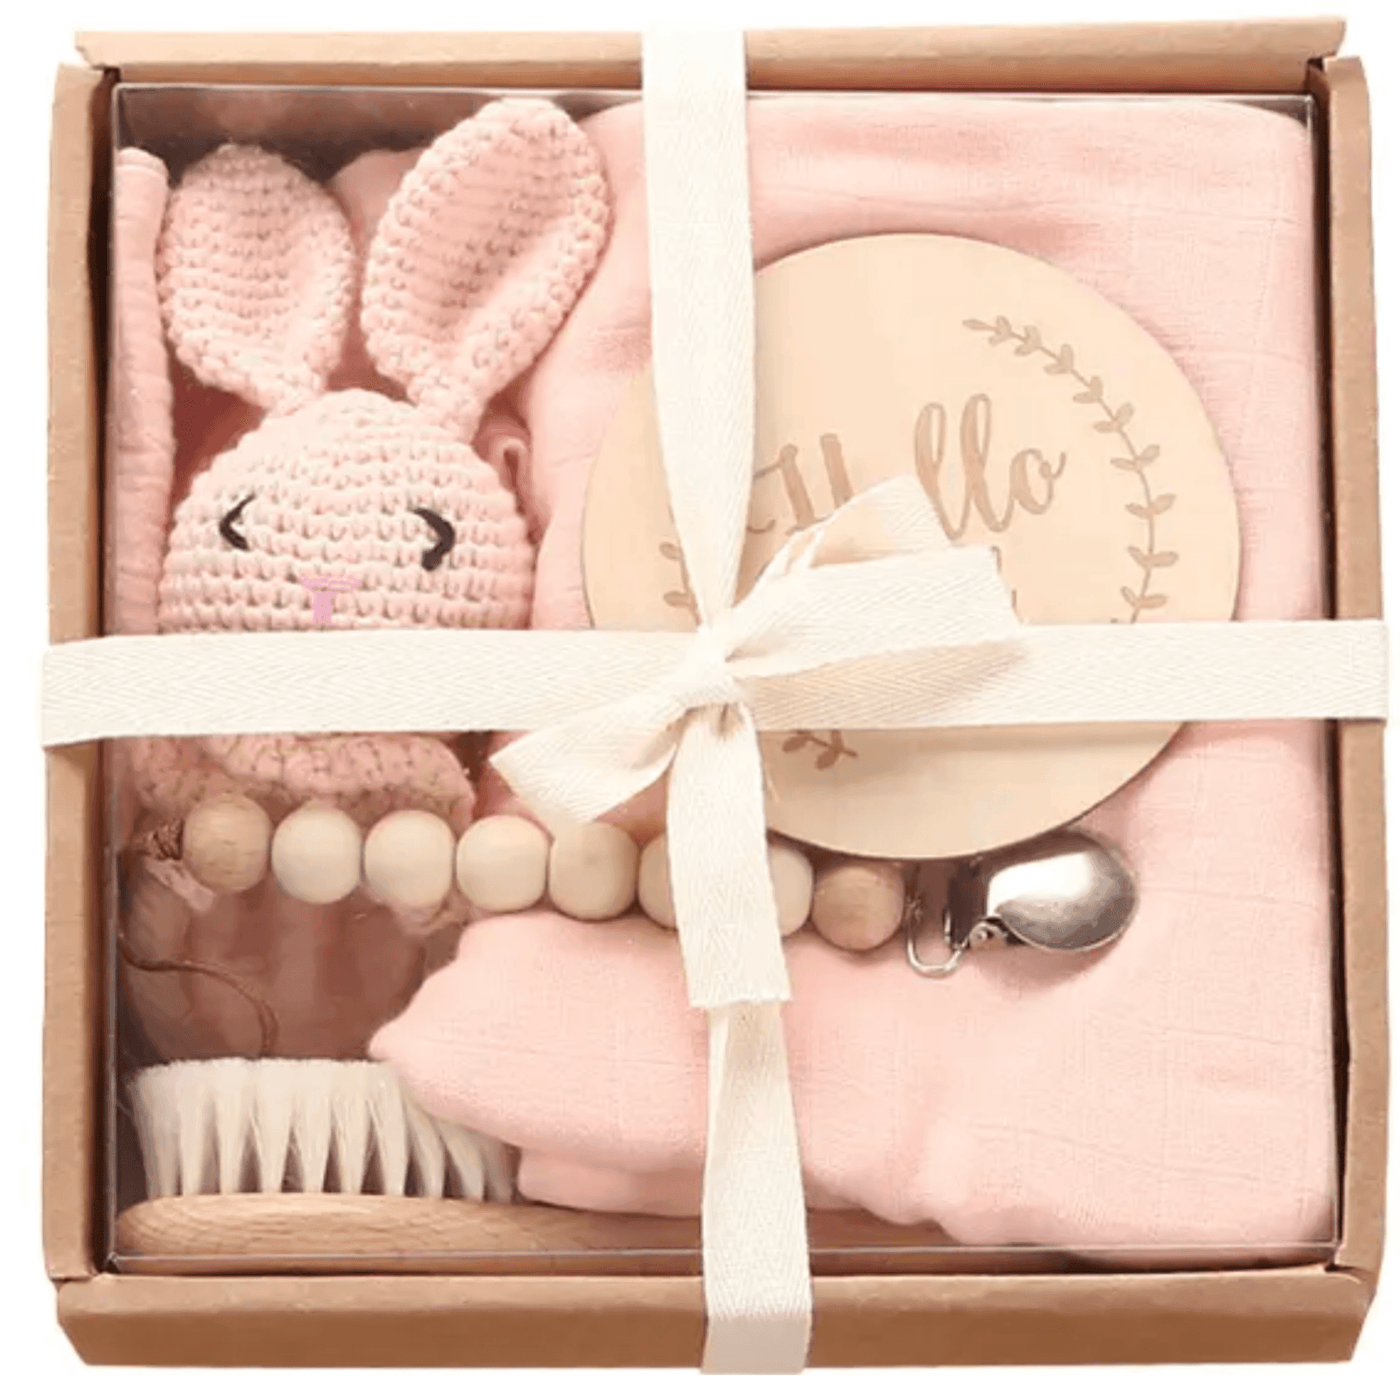 Welcome Baby Deluxe Gift Crate - Giften Market